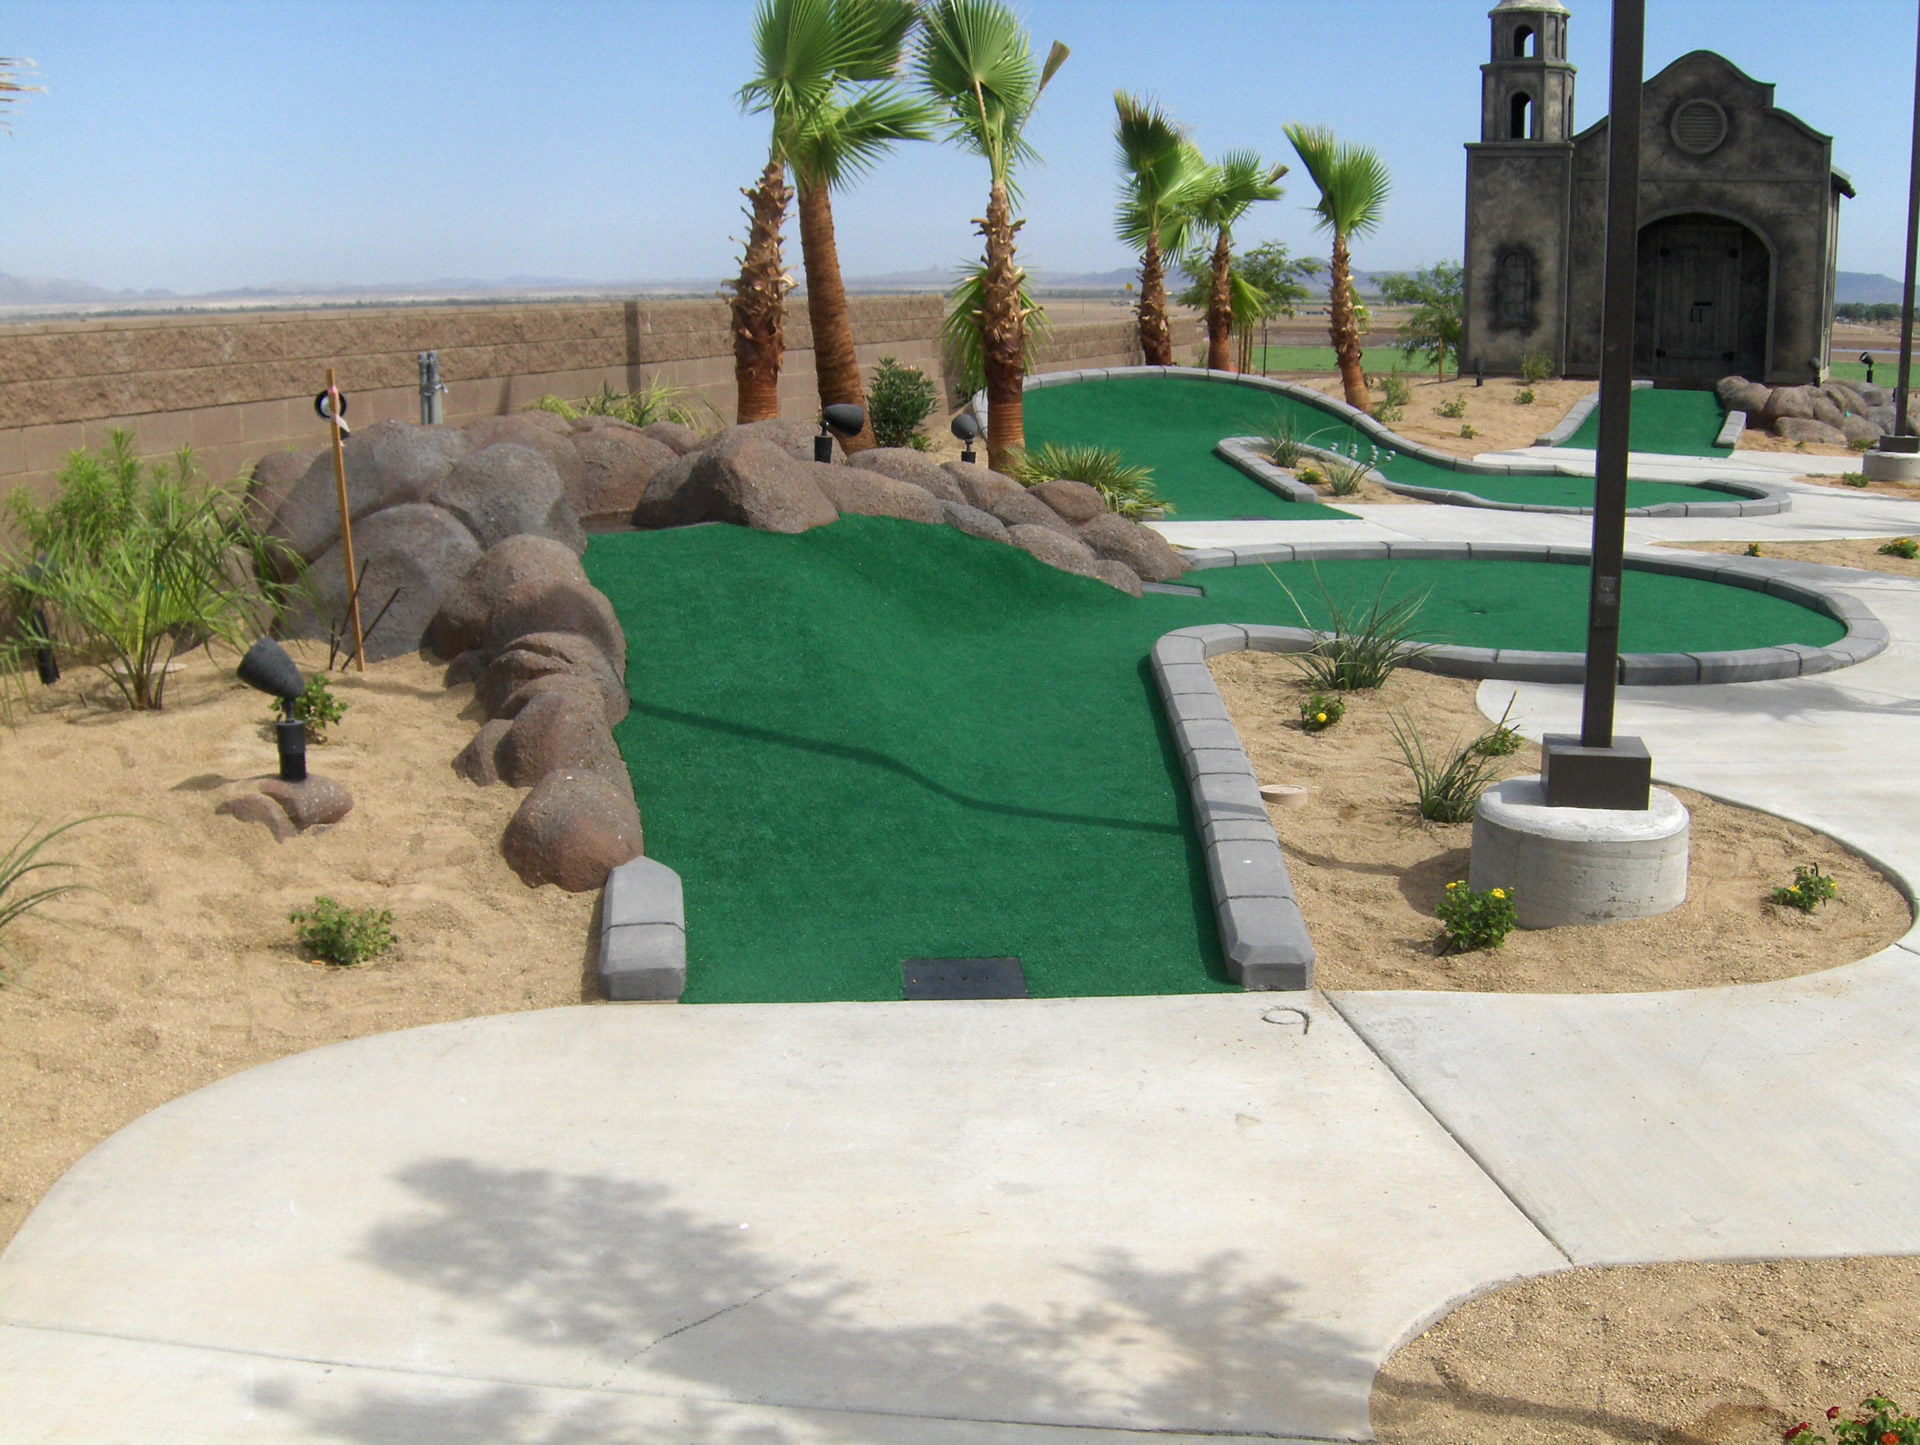 mini golf themed park in desert